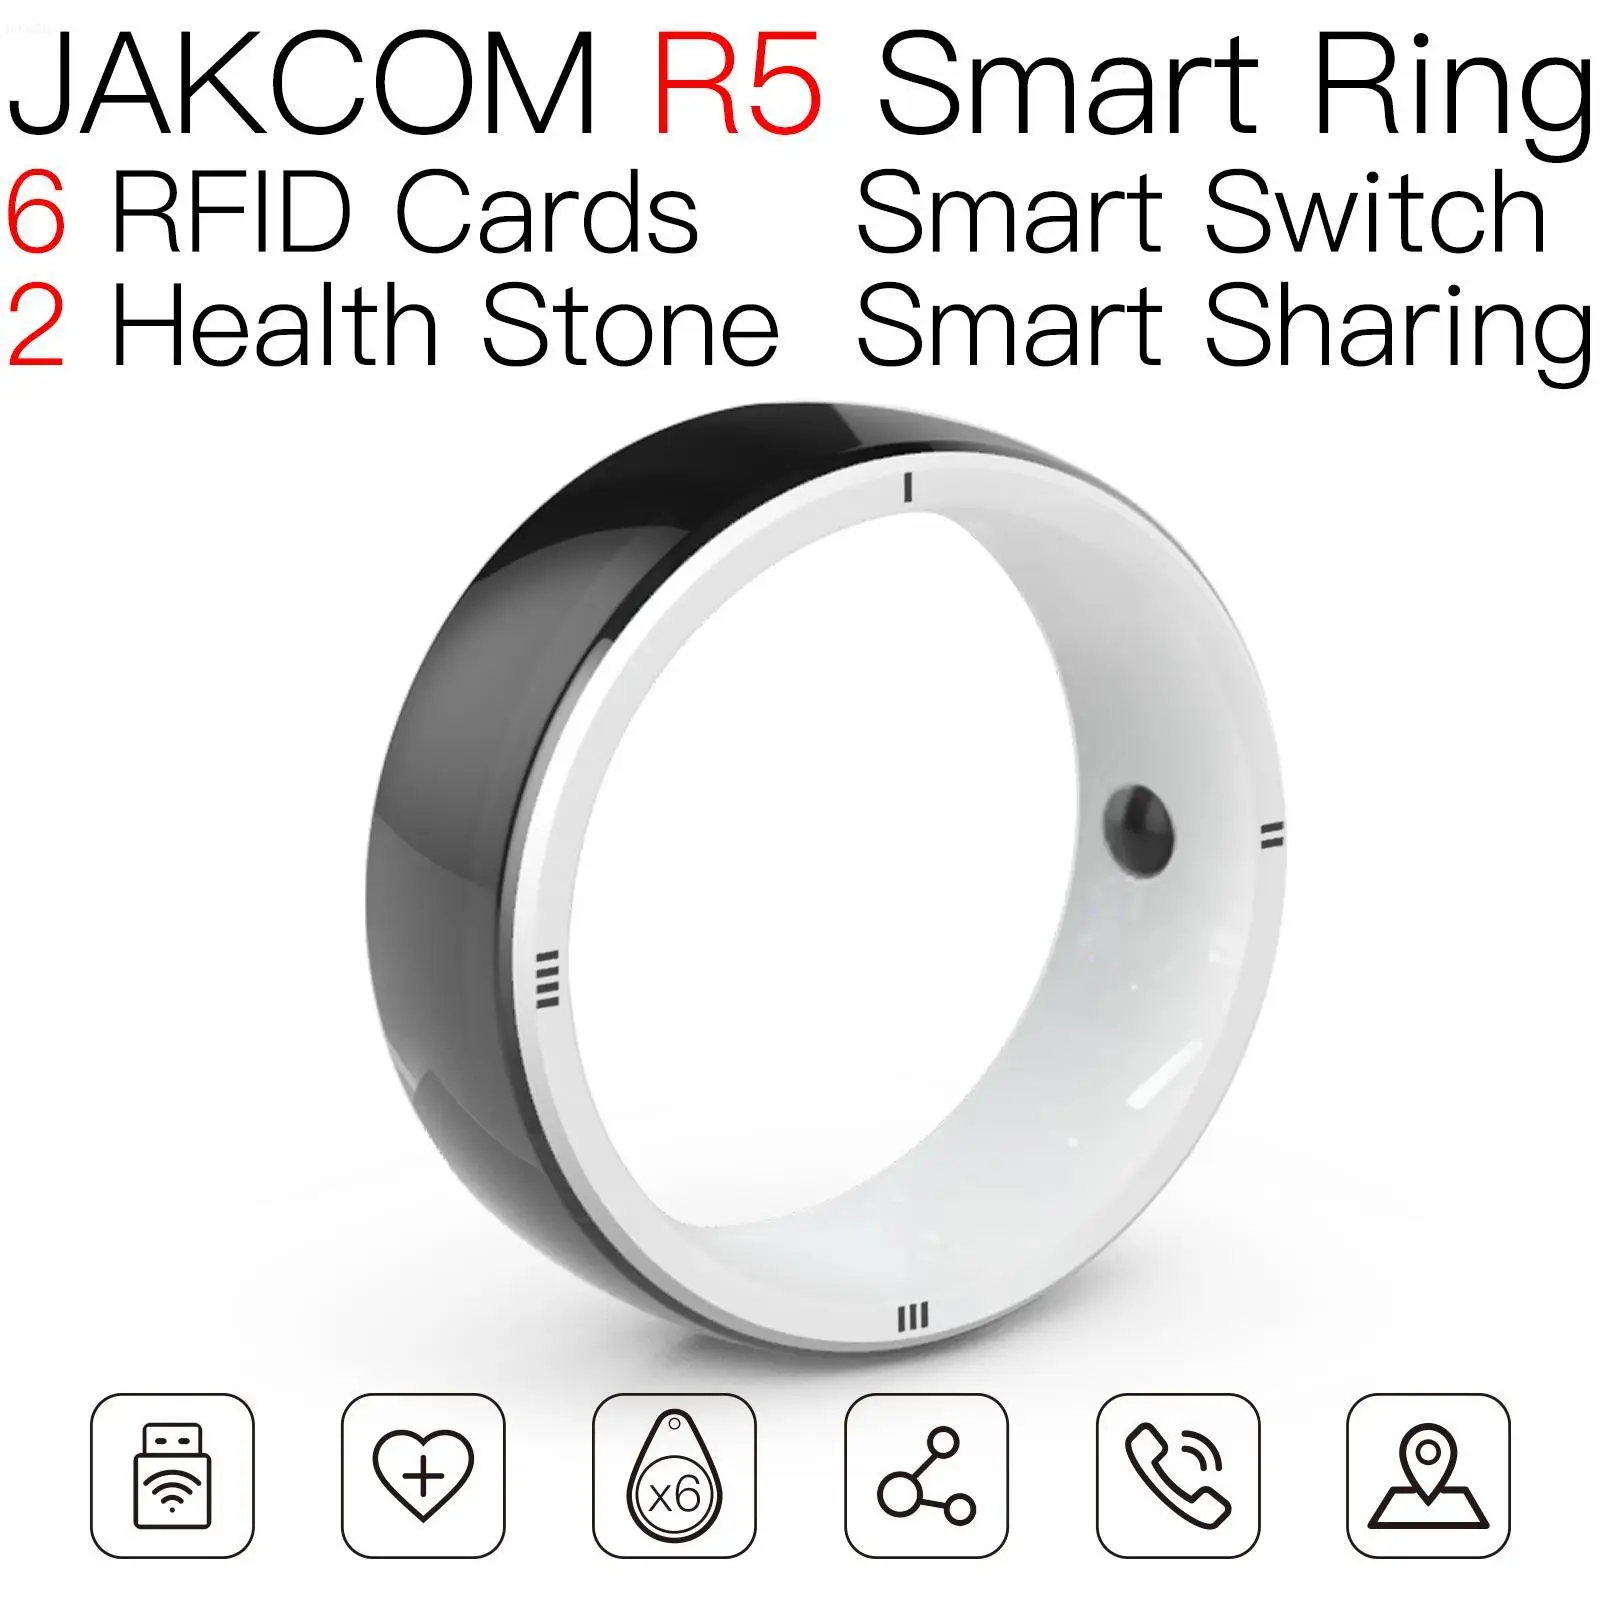 

JAKCOM R5 Smart Ring Newer than rfid tag laundry card protector chip printing uhf new horizons targeta amibo